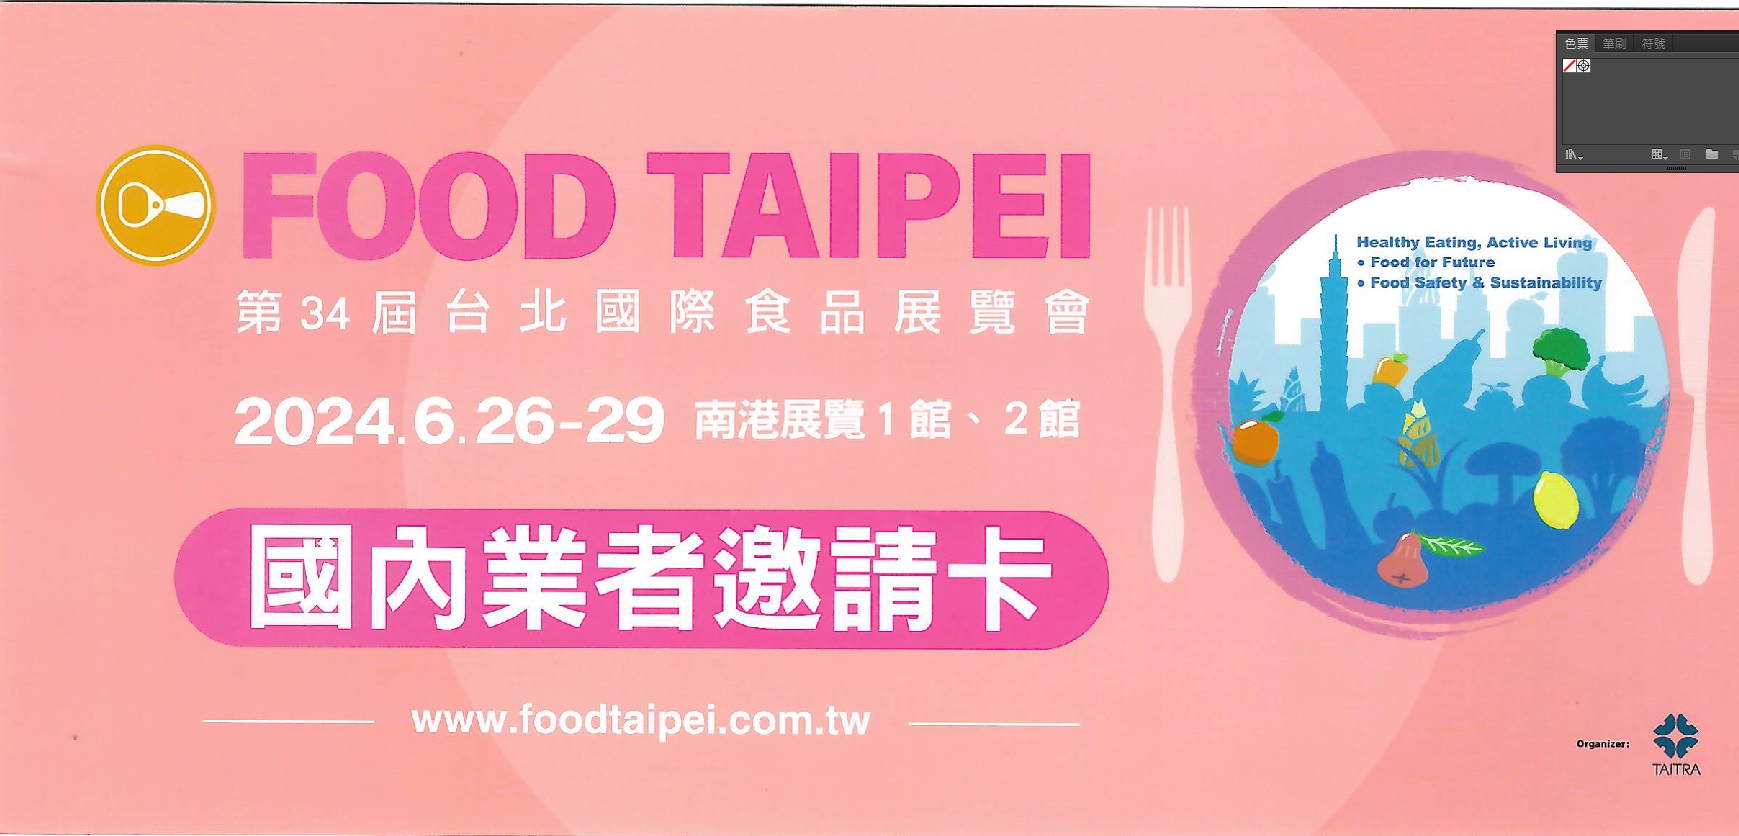 第34届台北国际食品展FOOD TAIPEI